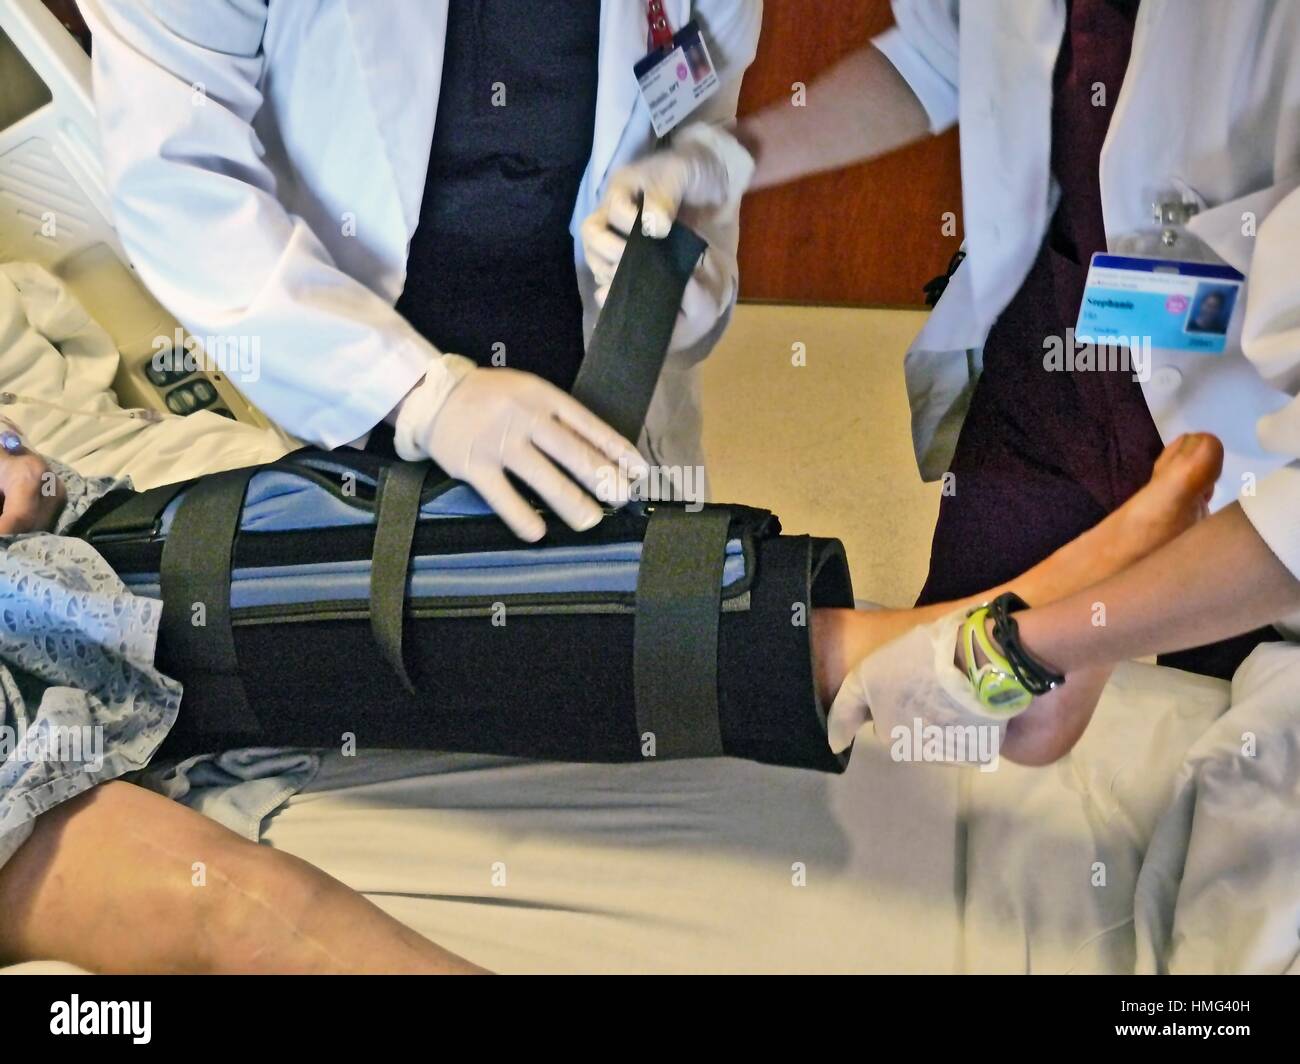 Una terapia di compressione gamba tutore è dotato di un piccolo paziente ricoverato in ospedale dopo intervento chirurgico al ginocchio. È utilizzata negli ospedali per la prevenzione di trombosi venosa profonda o profonde Foto Stock